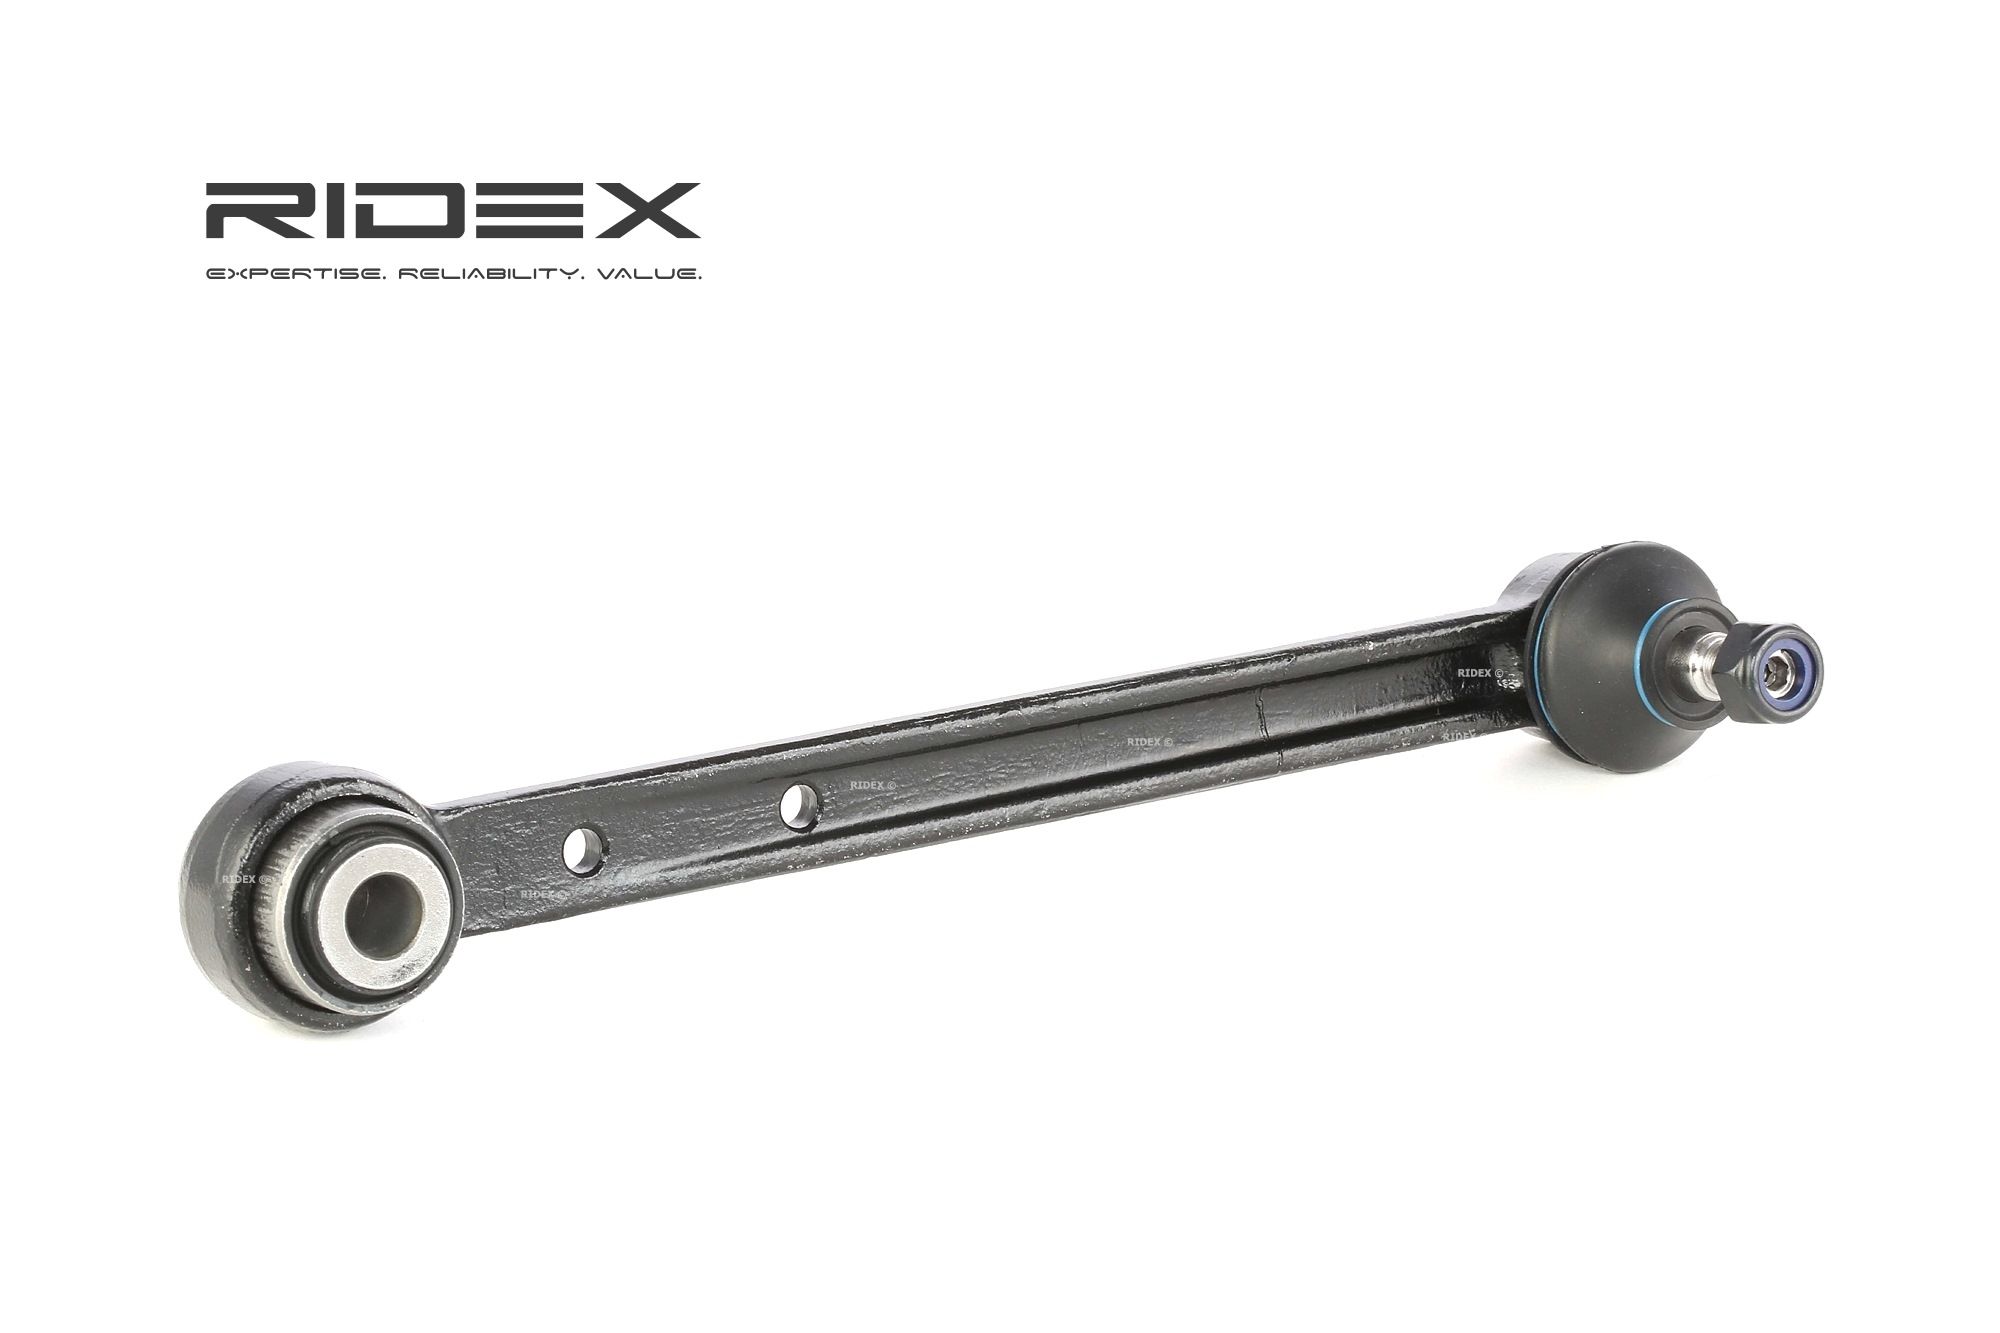 RIDEX 273C0527 originali MERCEDES-BENZ CLK 2010 Kit bracci Assale posteriore Dx, Assale posteriore Sx, interno, Braccio trasversale oscillante